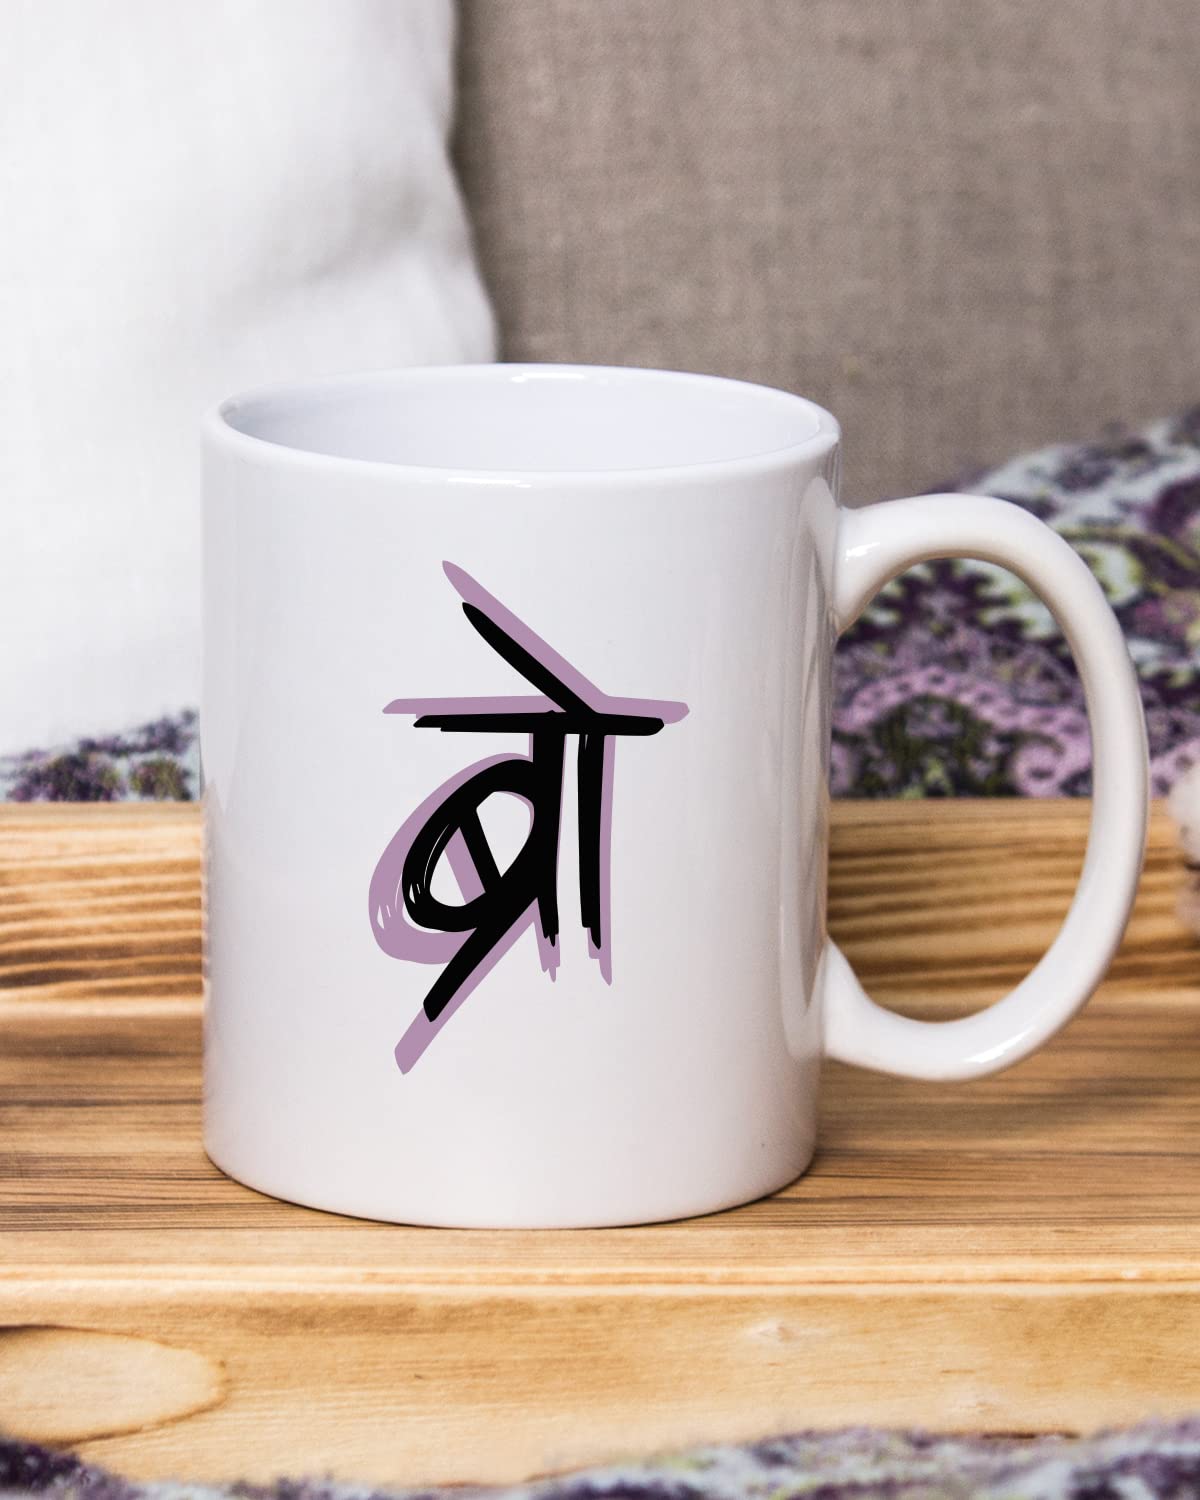 BRO Coffee Mug - Gift for Friend, Birthday Gift, Birthday Mug, Printed with Funny & Funky Dialogues, Bollywood & Web Series Mugs, Funny Mugs